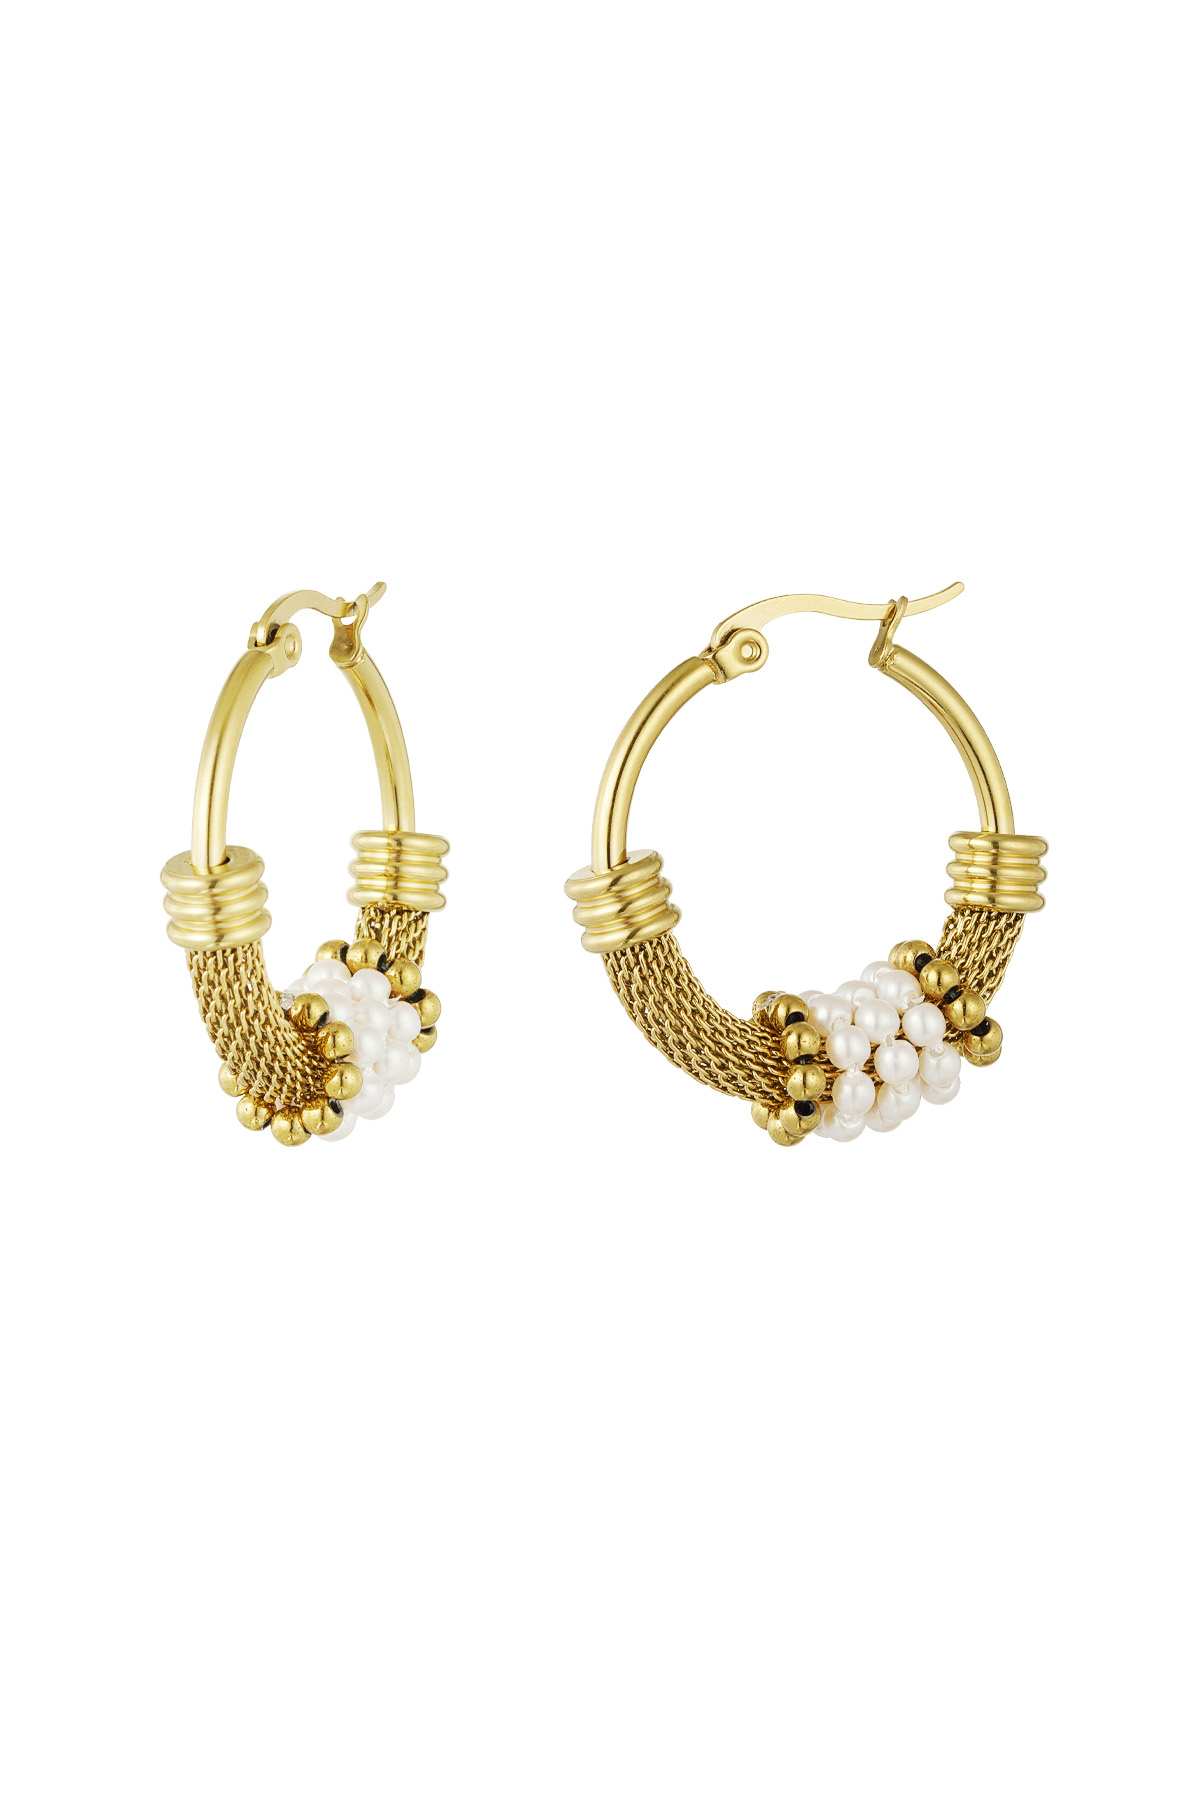 Ohrringe böhmische Perle - Gold h5 